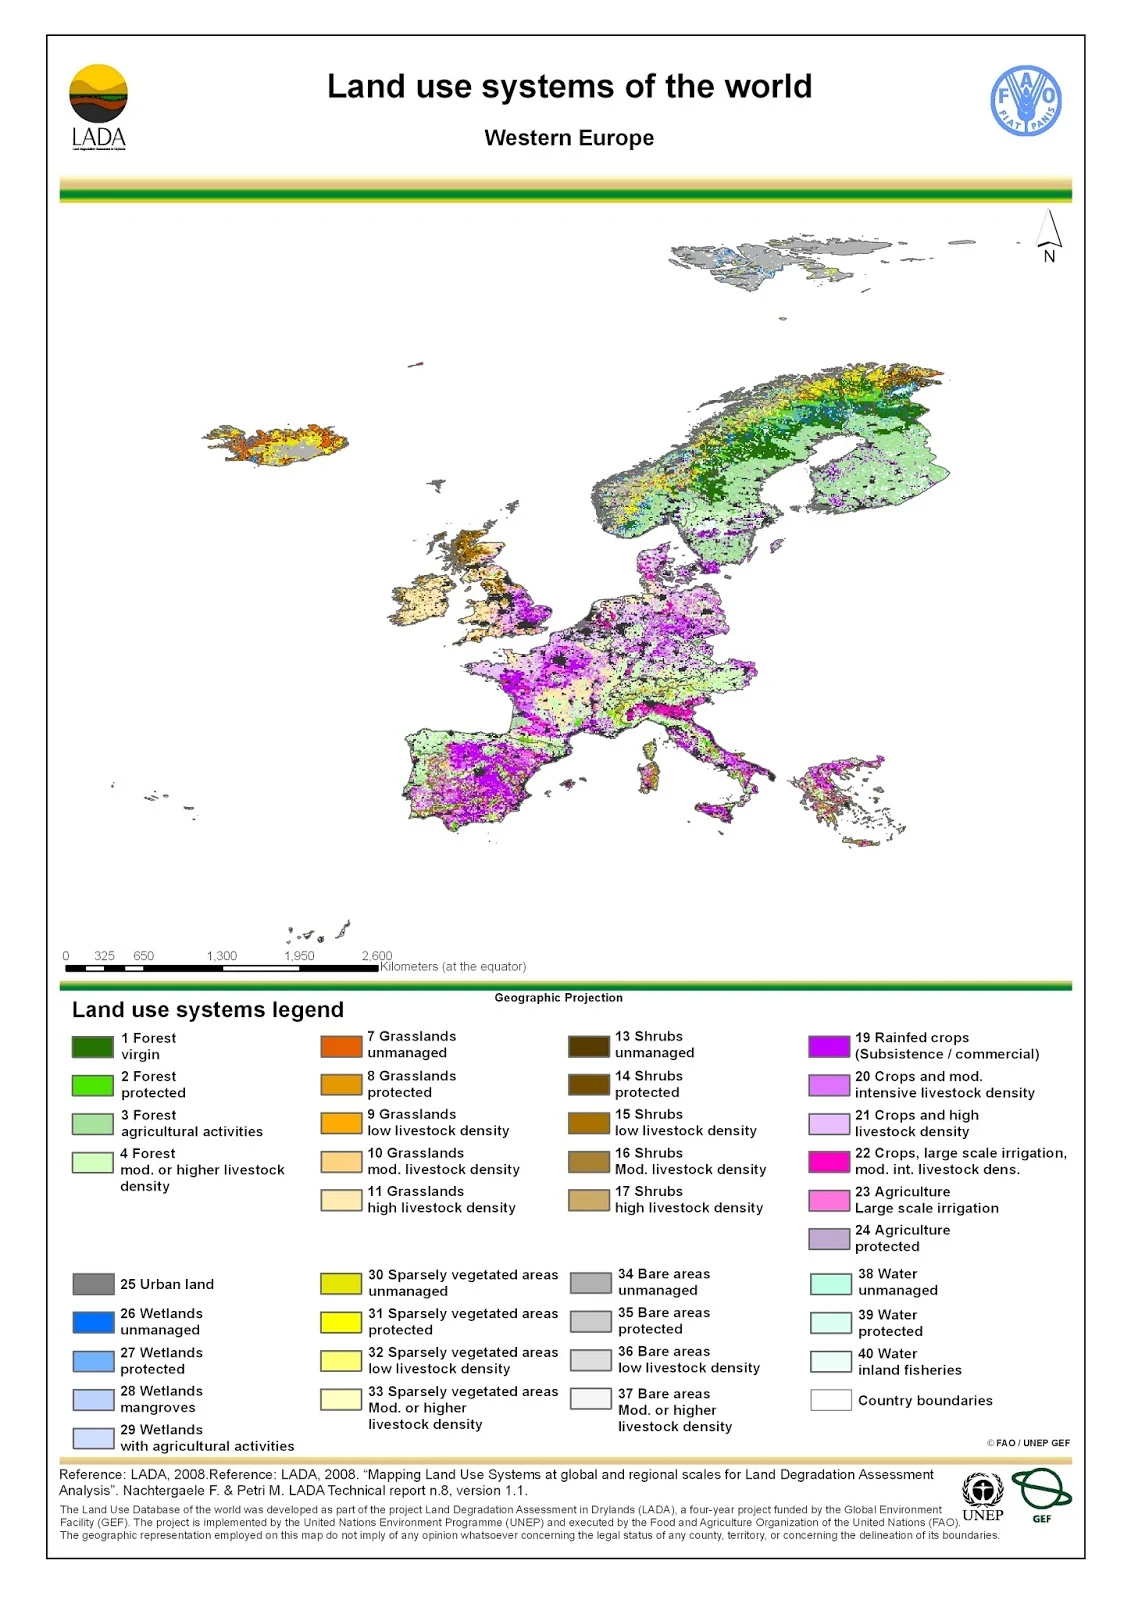 Western Europe: Land use map